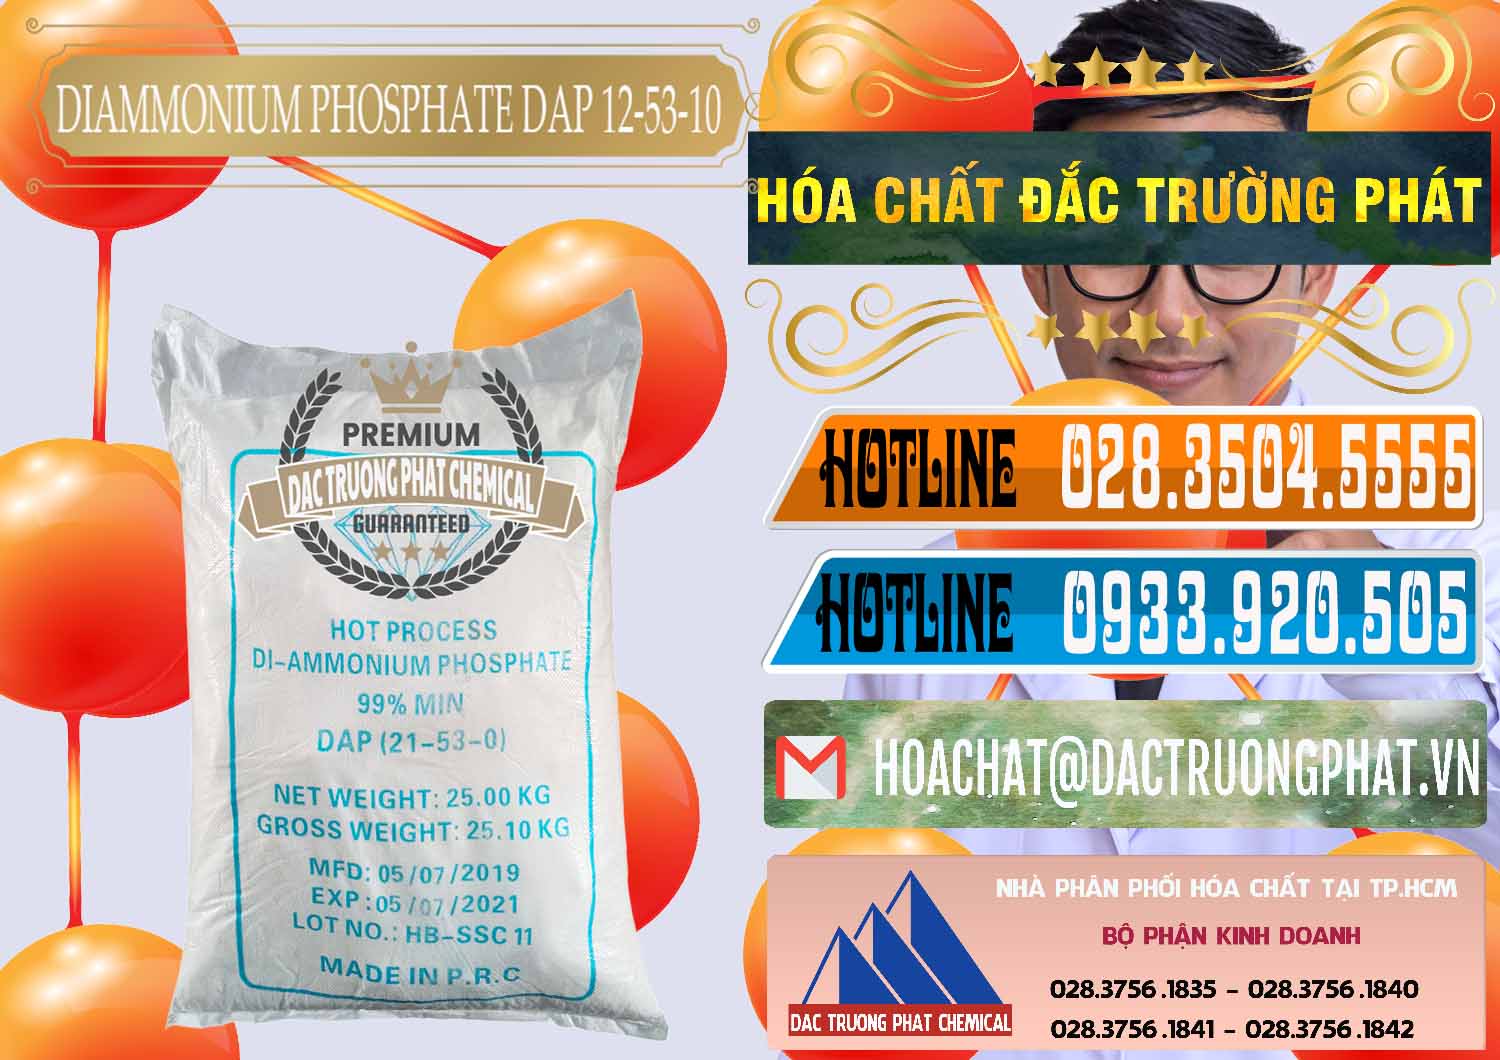 Cty chuyên phân phối _ bán DAP - Diammonium Phosphate Trung Quốc China - 0319 - Công ty chuyên cung cấp và kinh doanh hóa chất tại TP.HCM - stmp.net